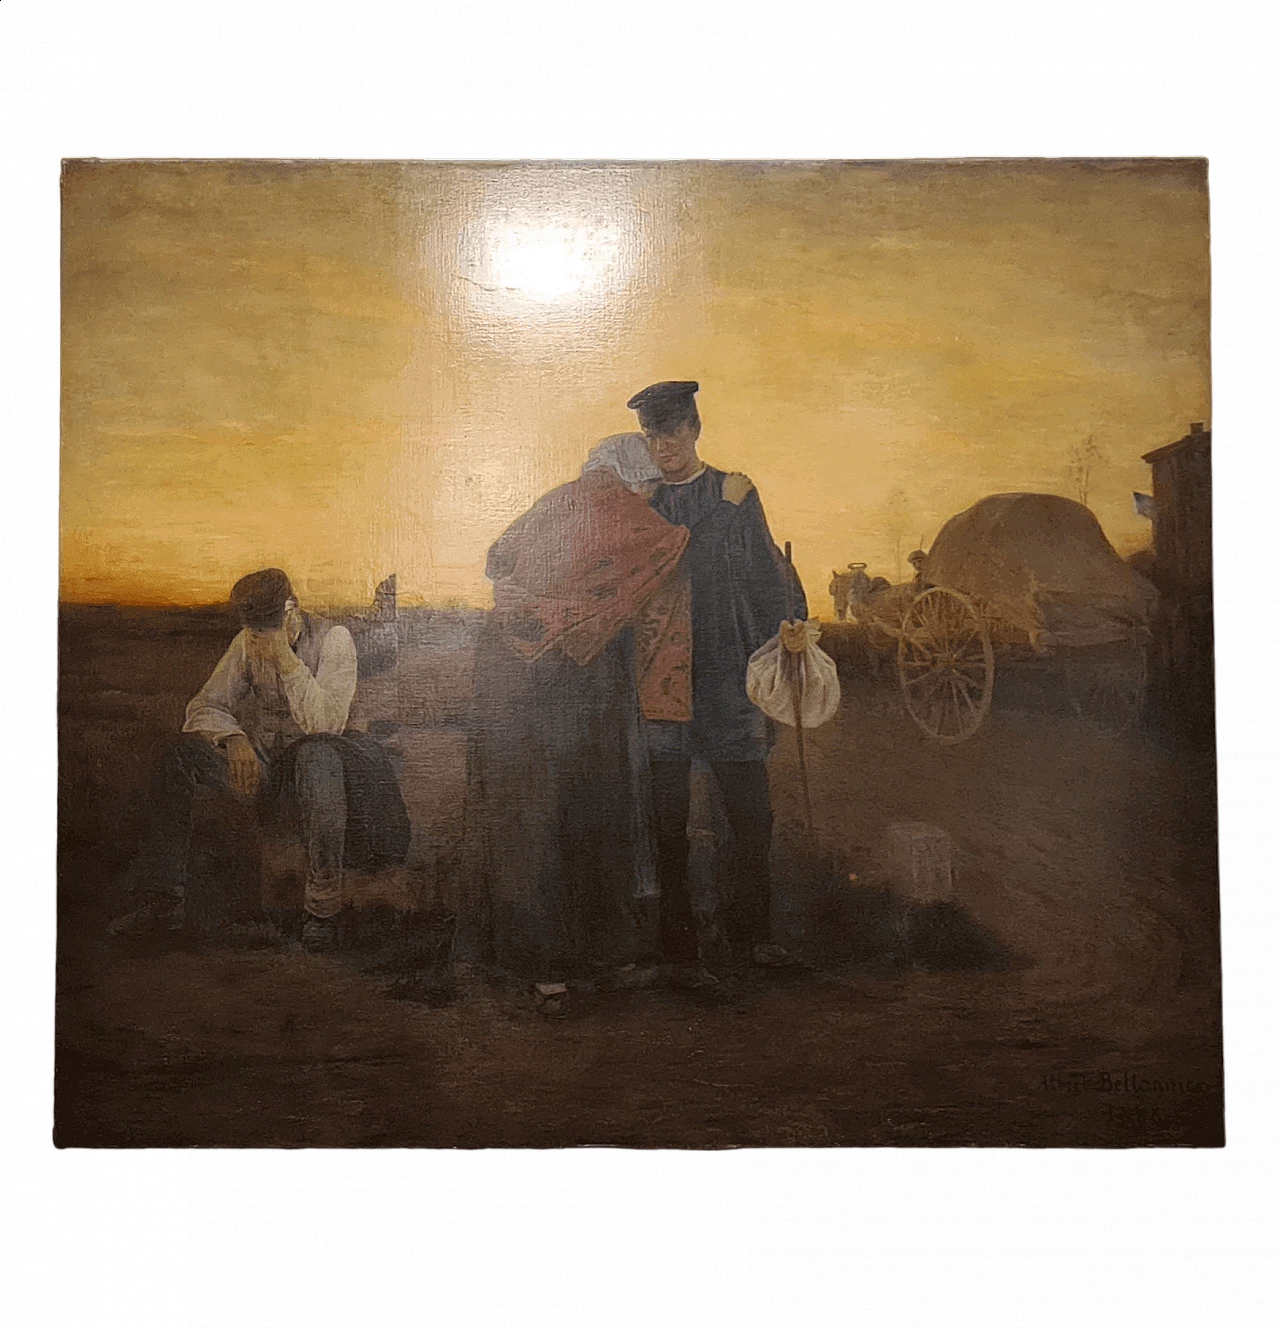 Albert Bettanier, La Depart, oil on canvas, 1888 11